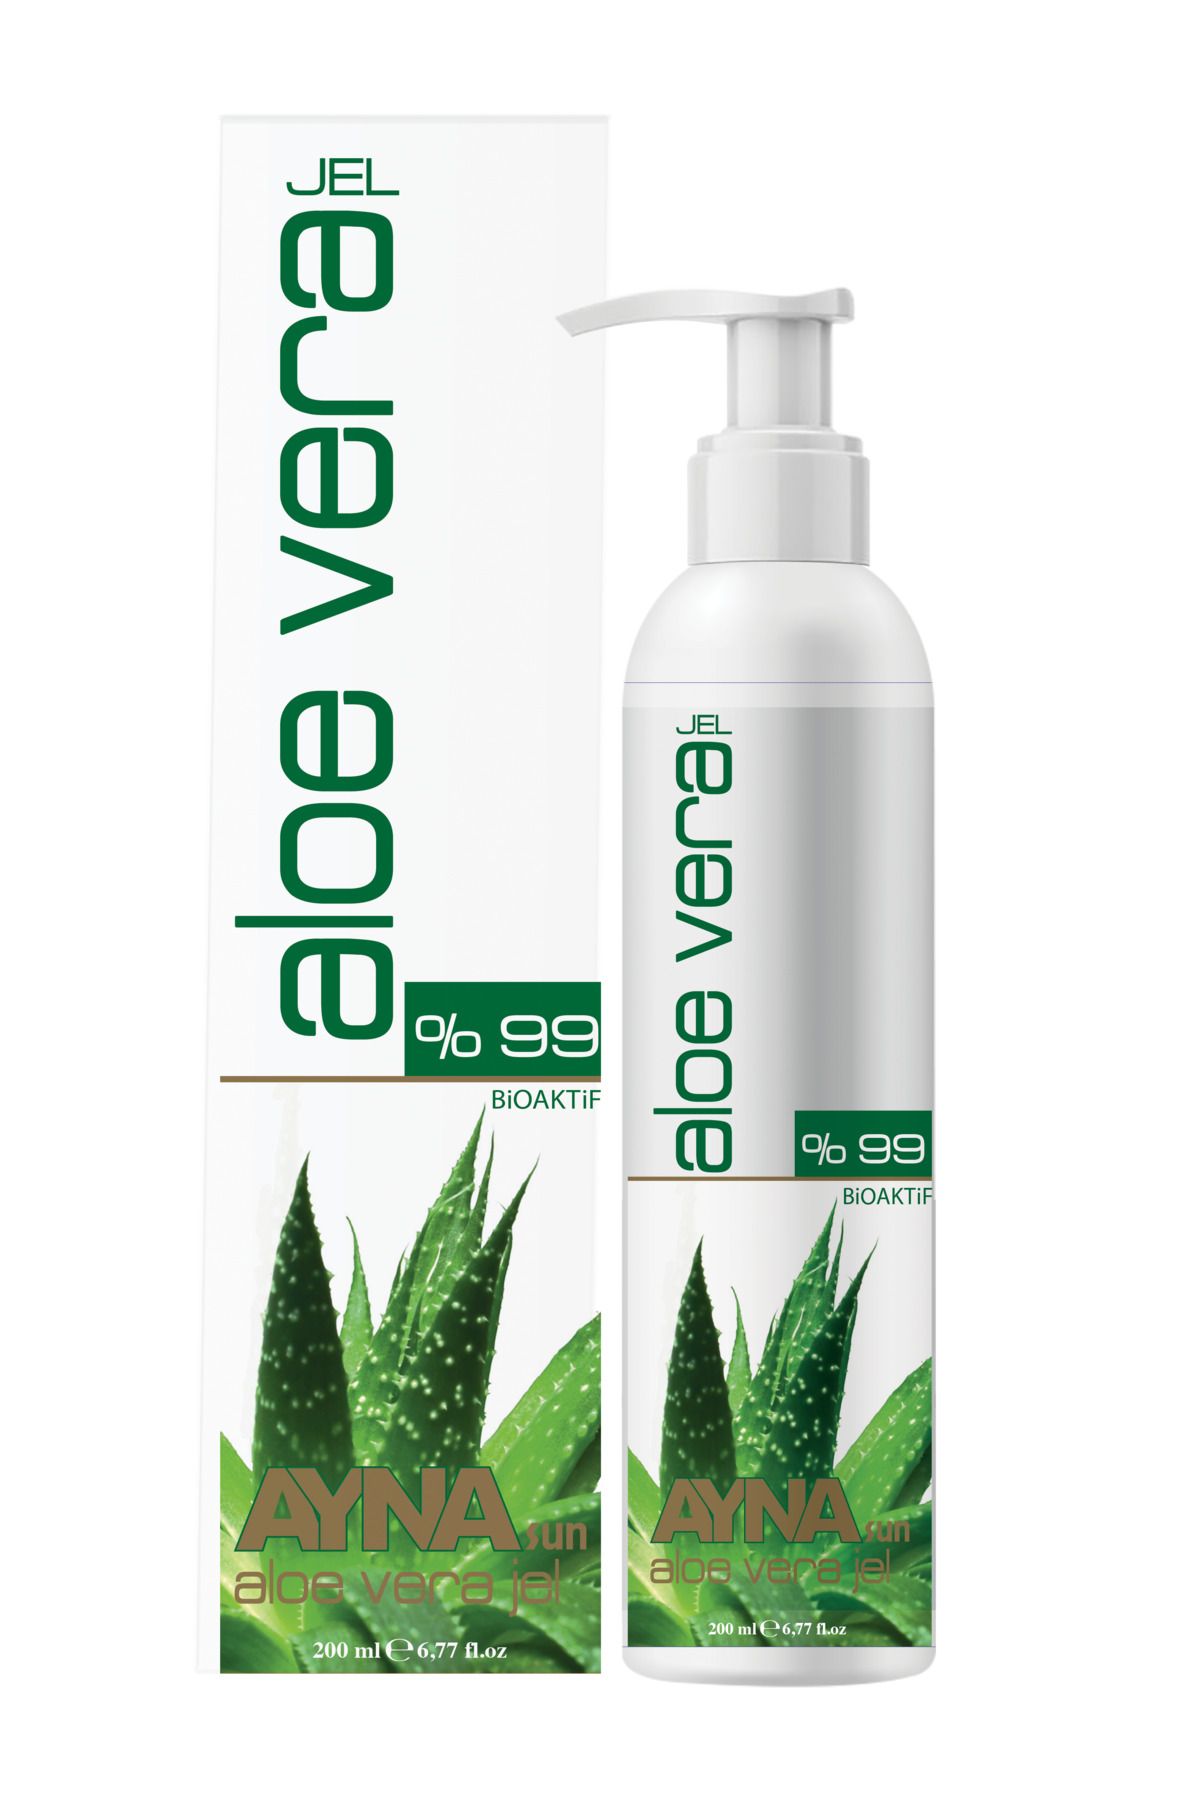 Ayna Sun Aloe Vera Jel Tüm Cilt Tipleri Için Nemlendirici 200 ml %99 Bioaktif